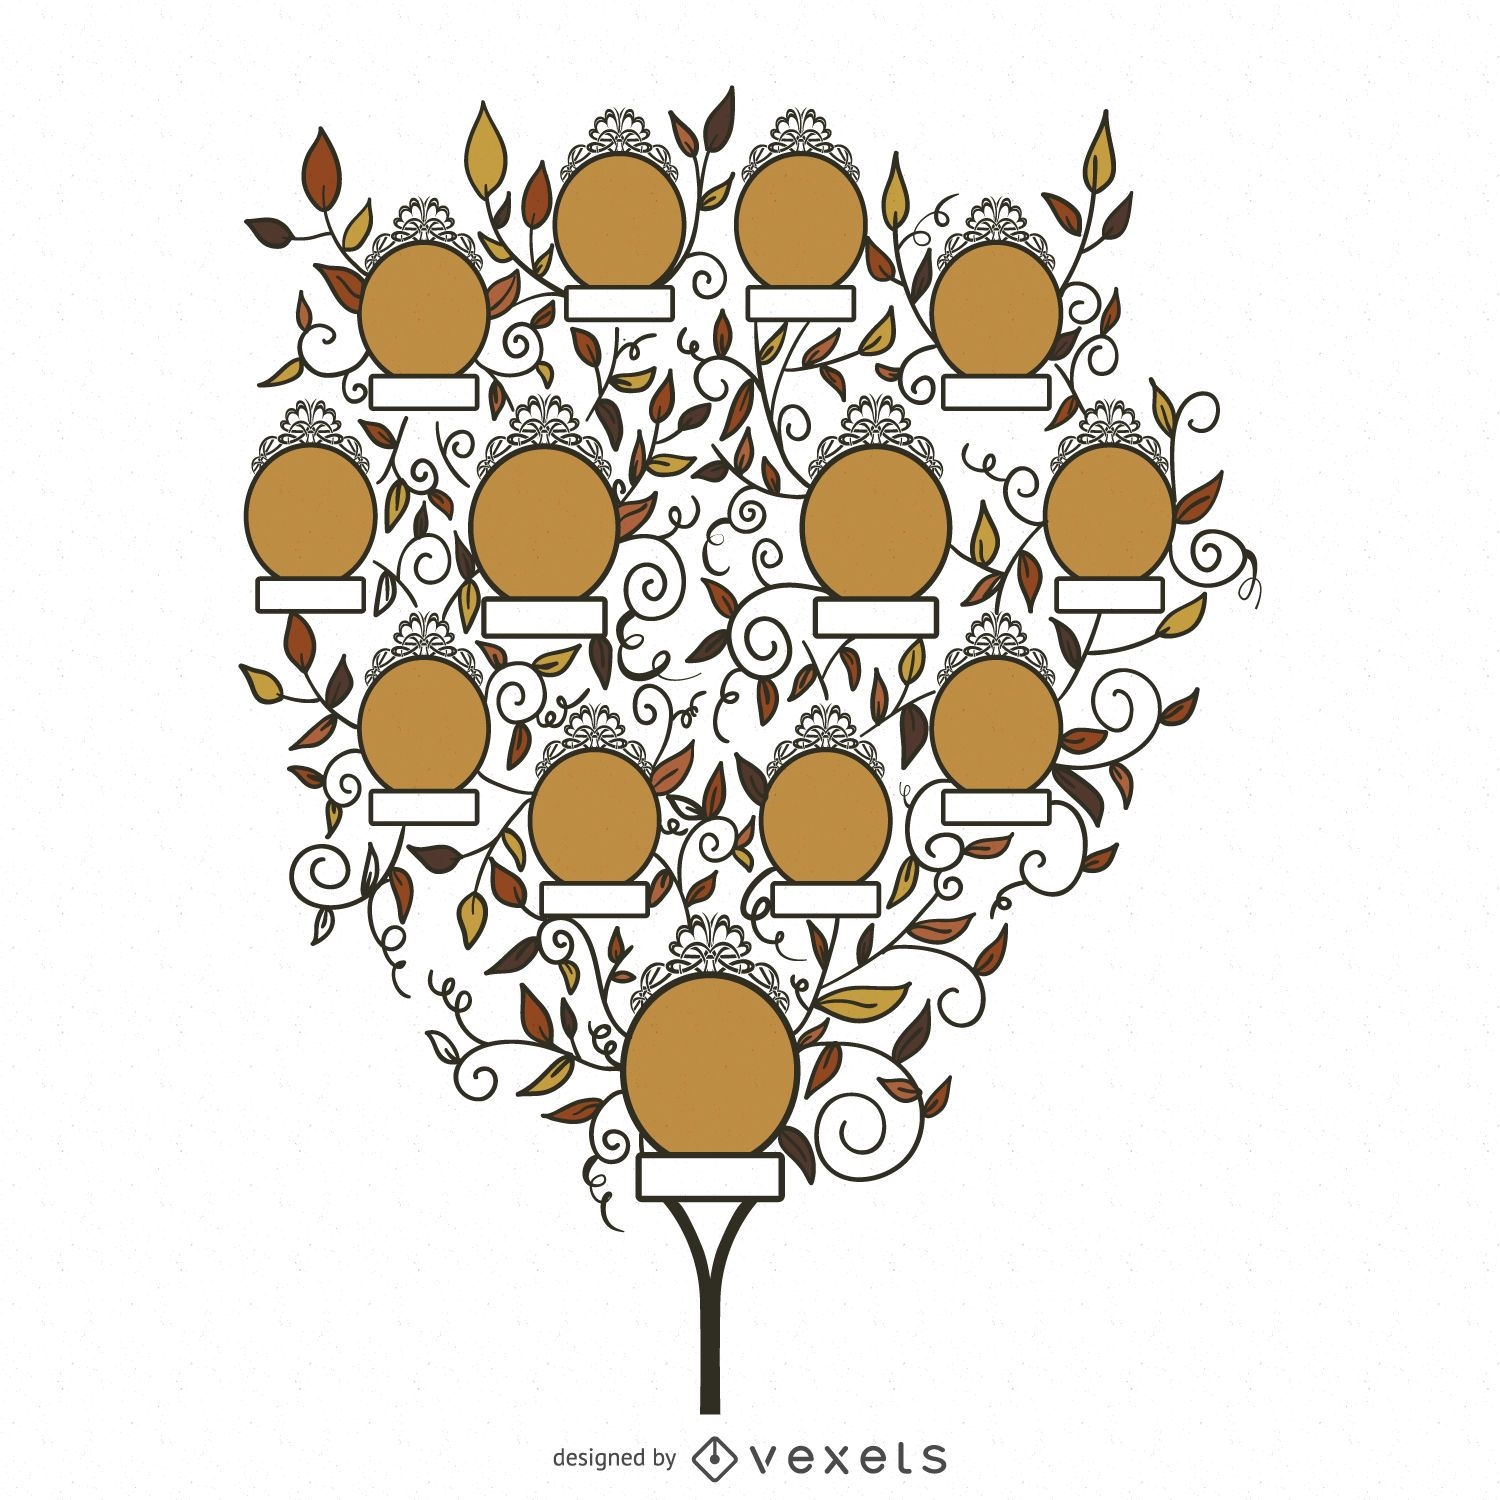 Modelo de árvore genealógica com folhas